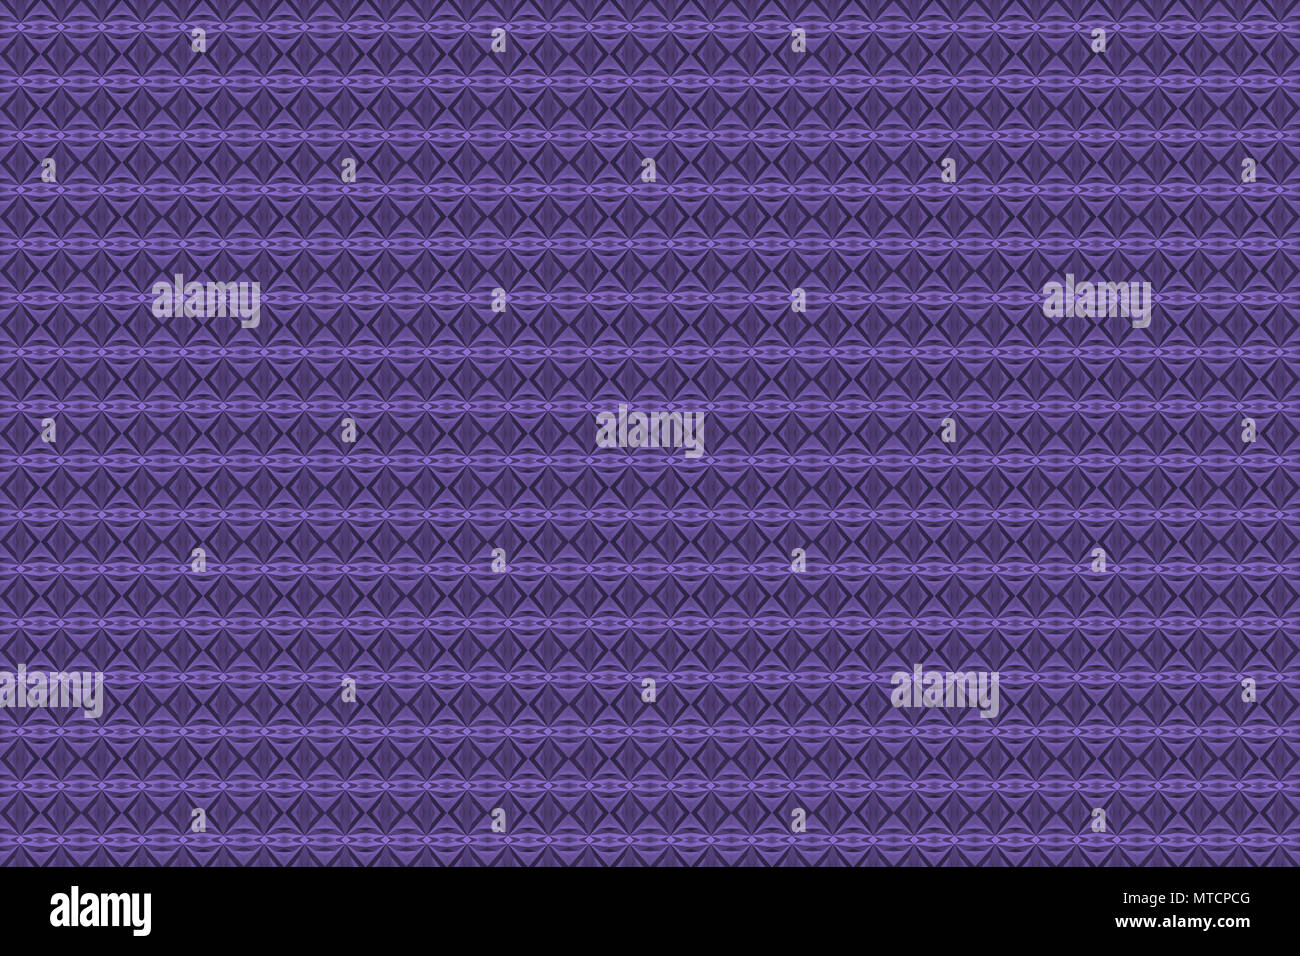 Pantone 2018 Farbe des Jahres; Ultra Violett Violett; Pantone 18-3838 Fliesen- Zusammenfassung Hintergrund wallpaper Stockfoto